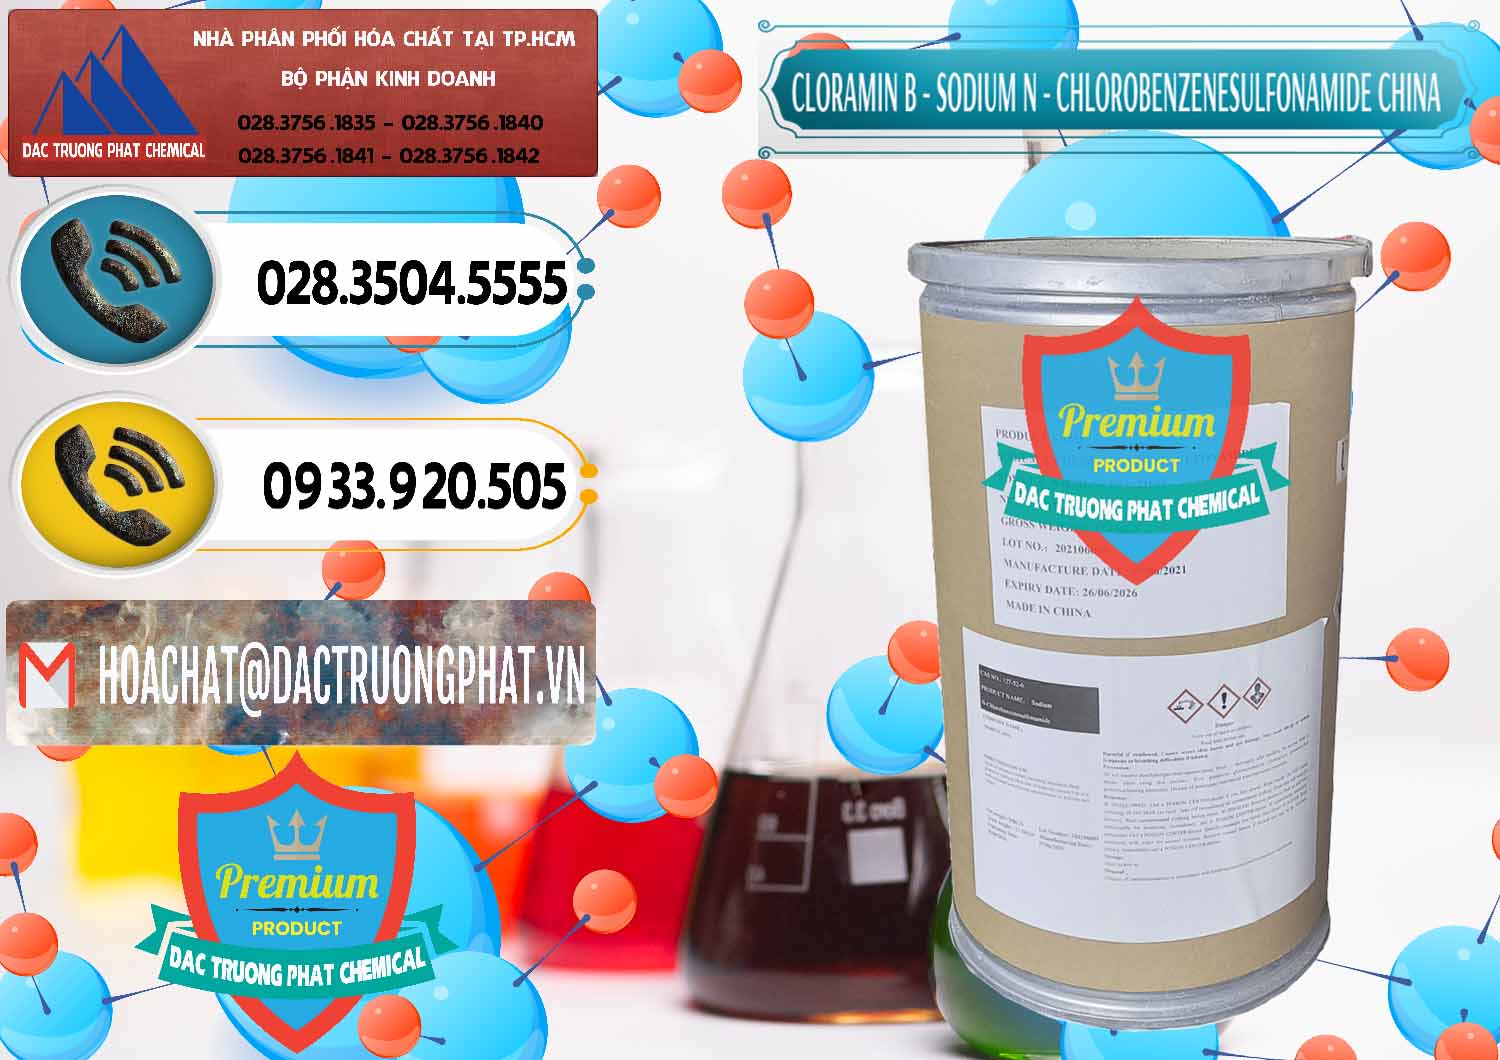 Công ty chuyên bán và cung ứng Cloramin B Khử Trùng, Diệt Khuẩn Trung Quốc China - 0298 - Công ty phân phối & cung cấp hóa chất tại TP.HCM - hoachatdetnhuom.vn